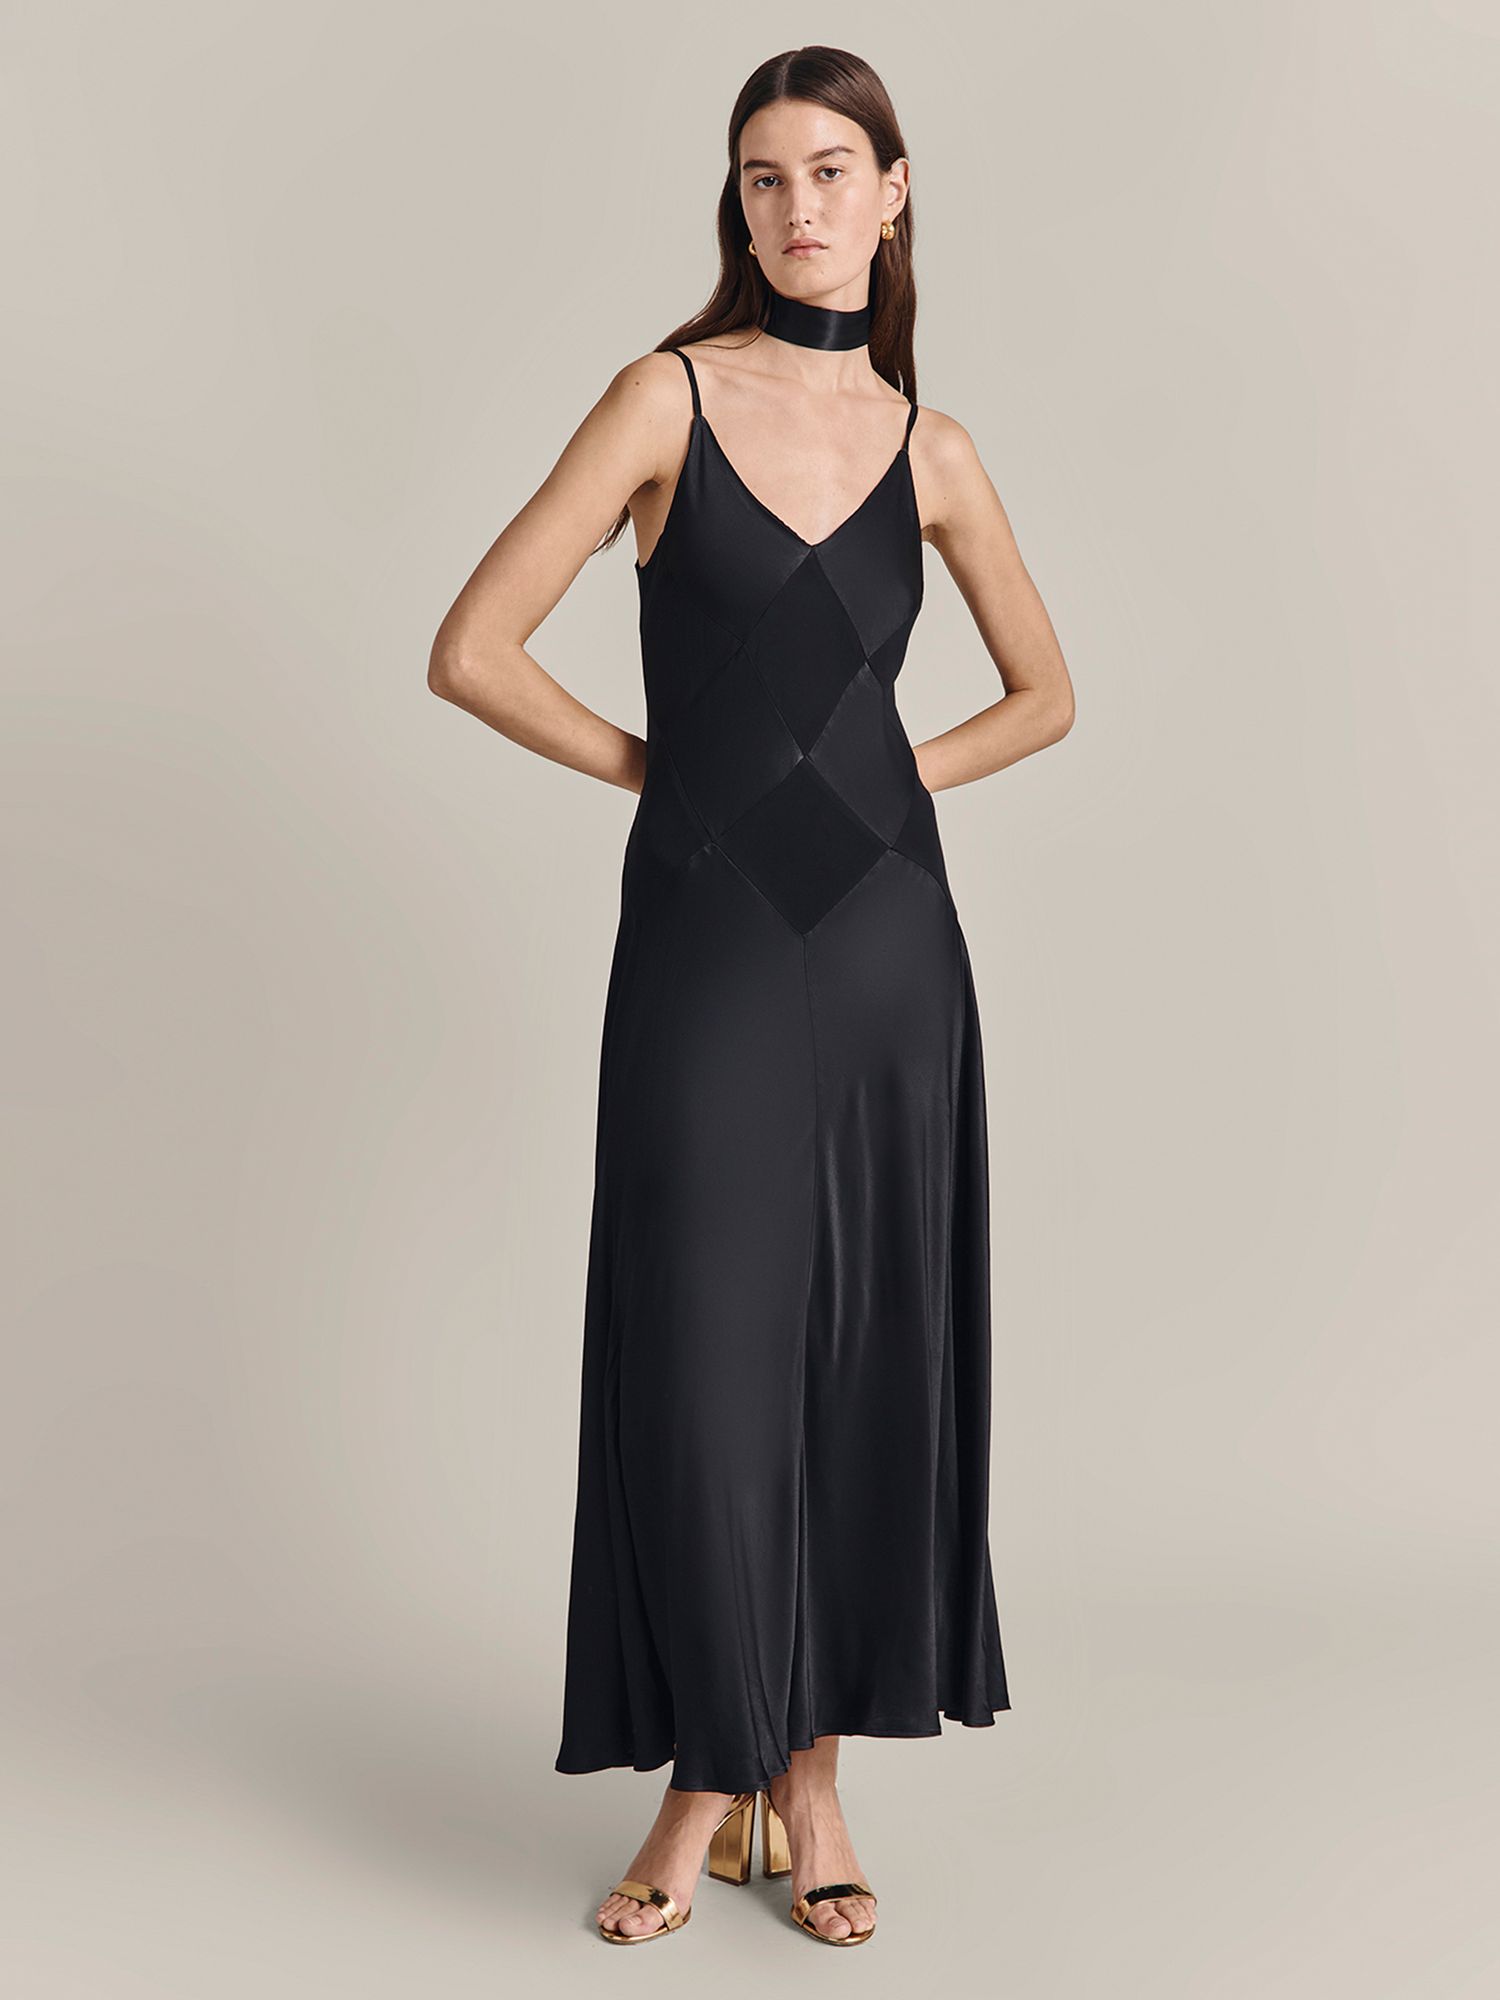 Ghost Nina Satin Maxi Dress, Black at John Lewis & Partners